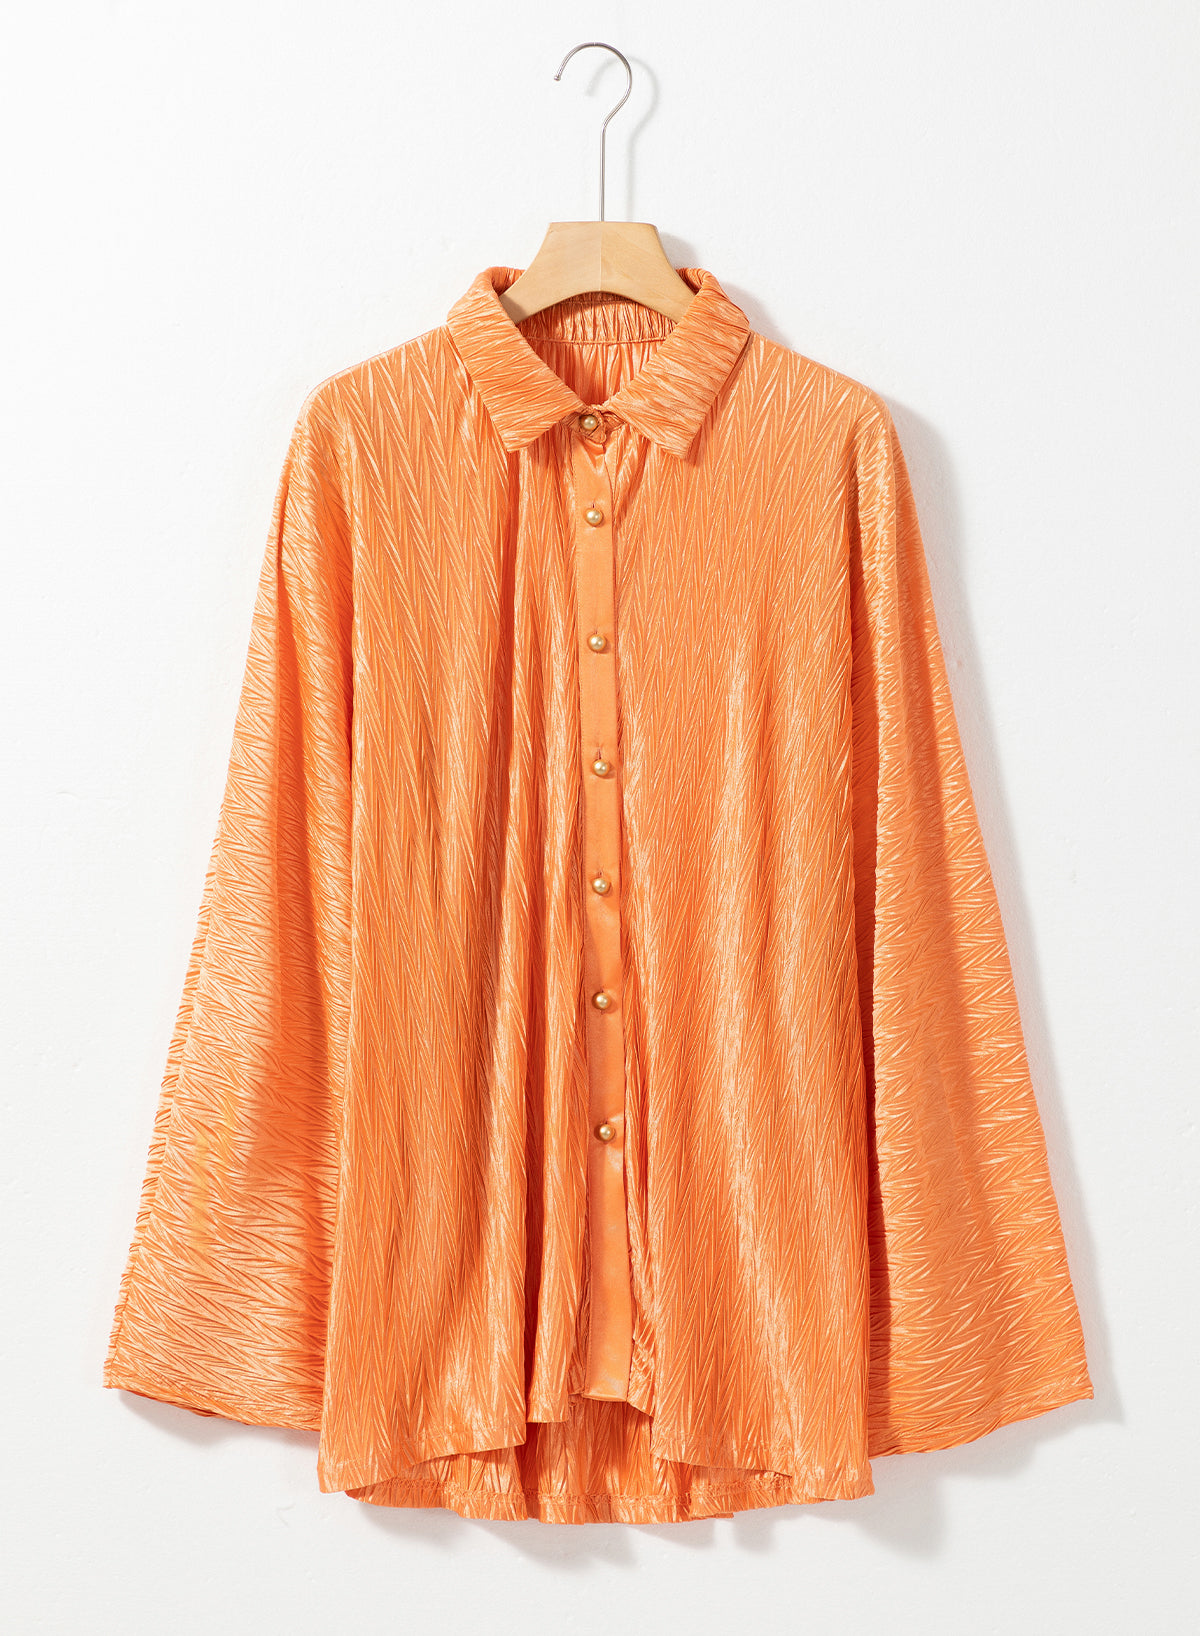 Grapefruitorangefarbenes, gekräuseltes Hemd mit weiten Ärmeln und Knöpfen